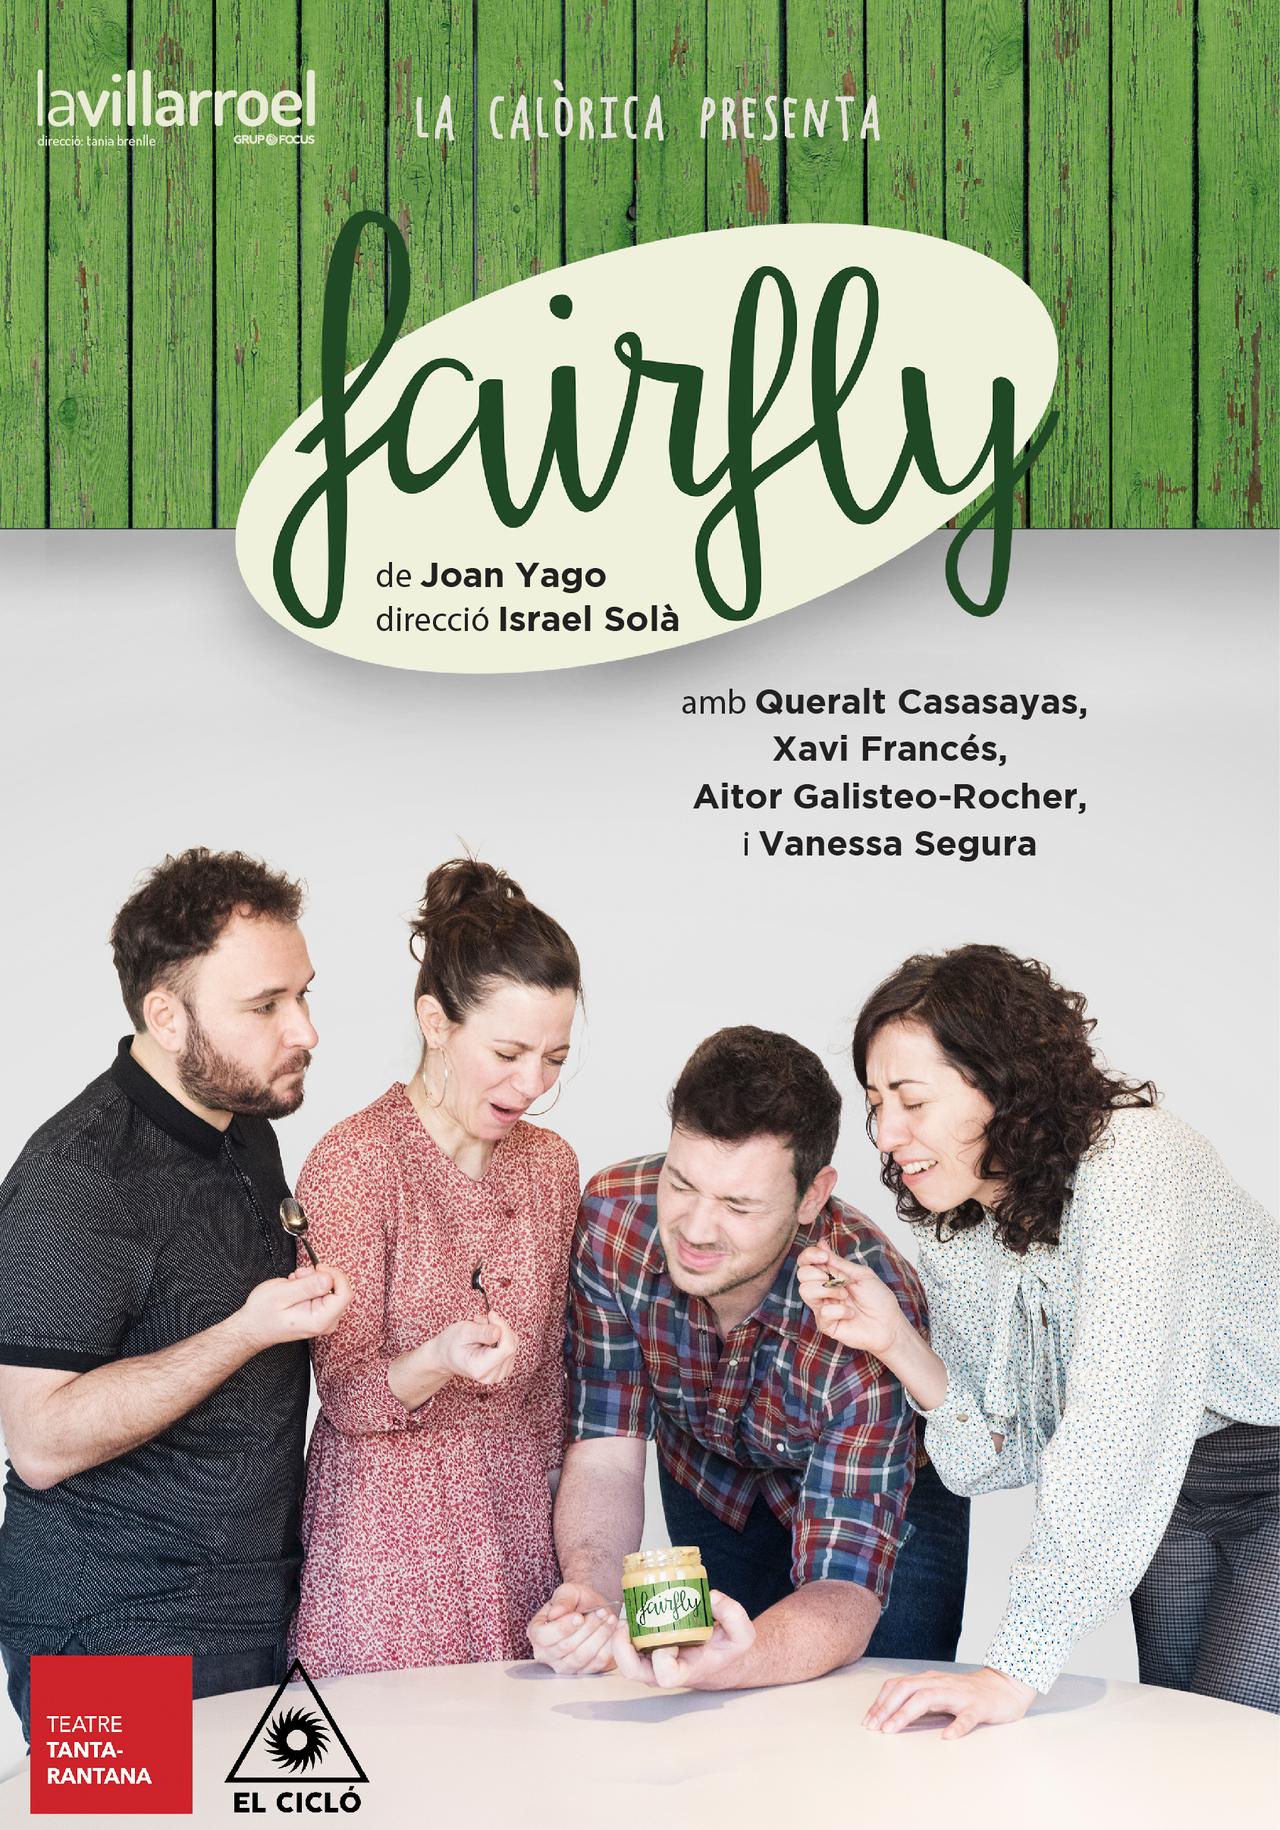 Fairfly, de Joan Yago, en Barcelona